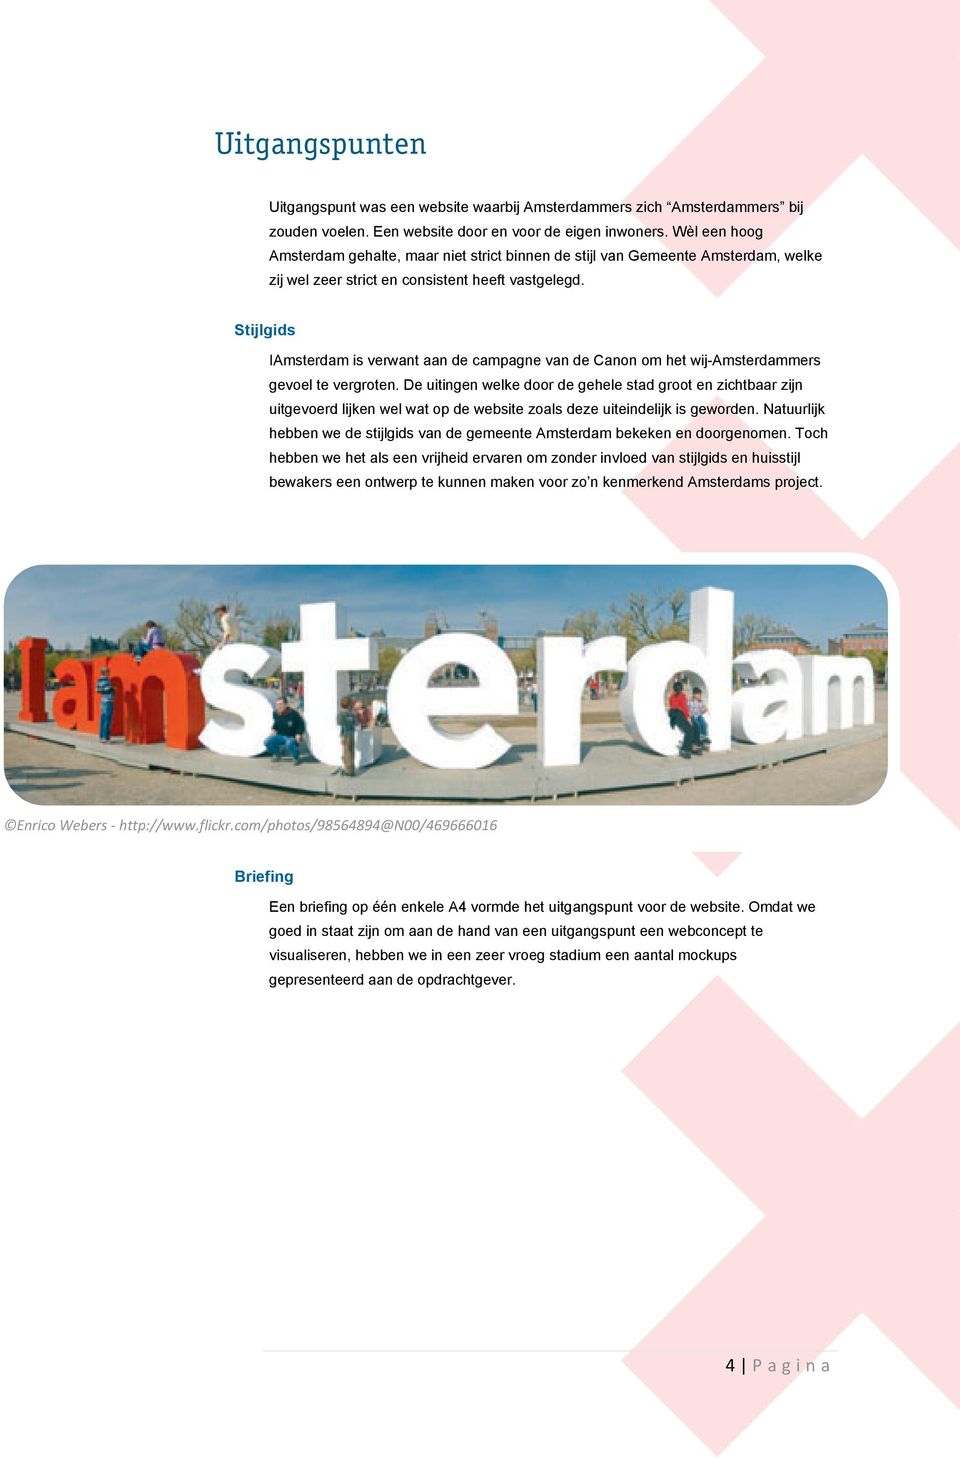 Stijlgids IAmsterdam is verwant aan de campagne van de Canon om het wij-amsterdammers gevoel te vergroten.